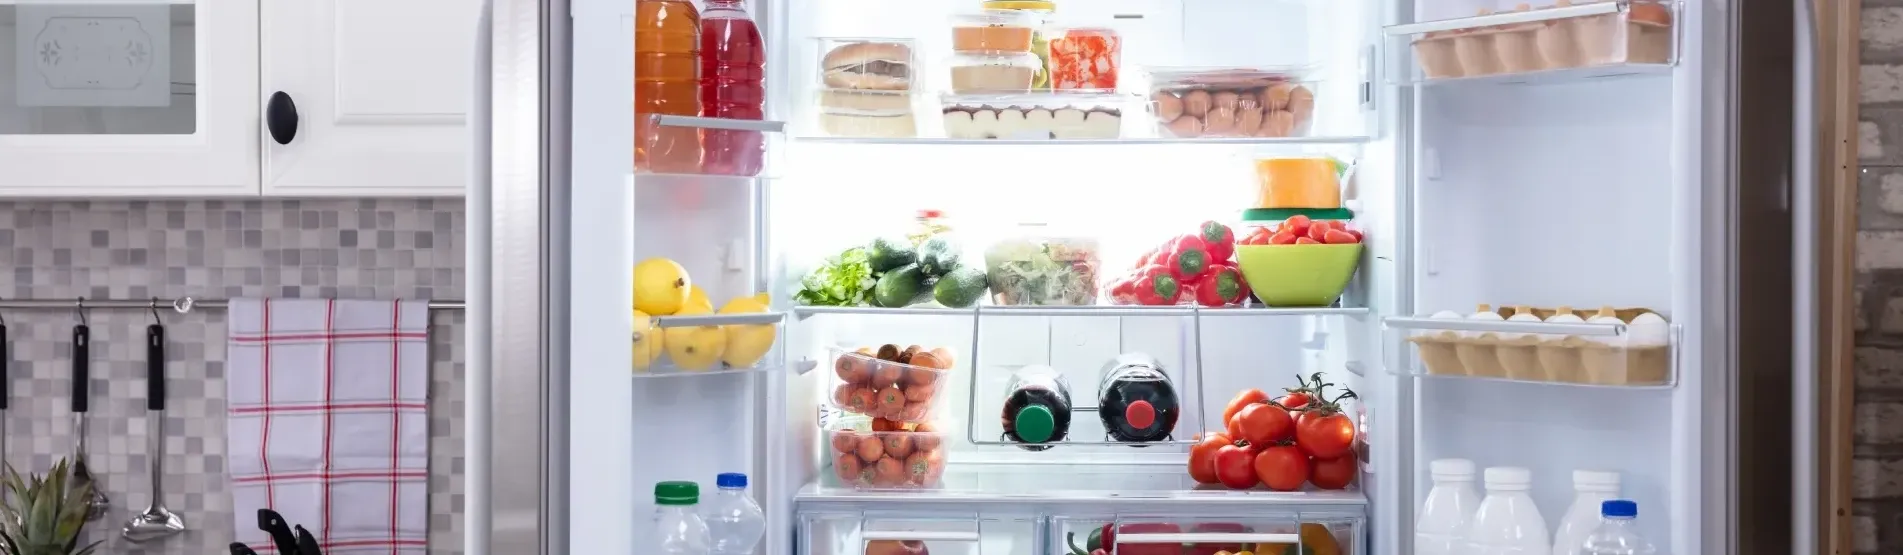 Melhor geladeira 400 litros: veja 9 modelos para comprar